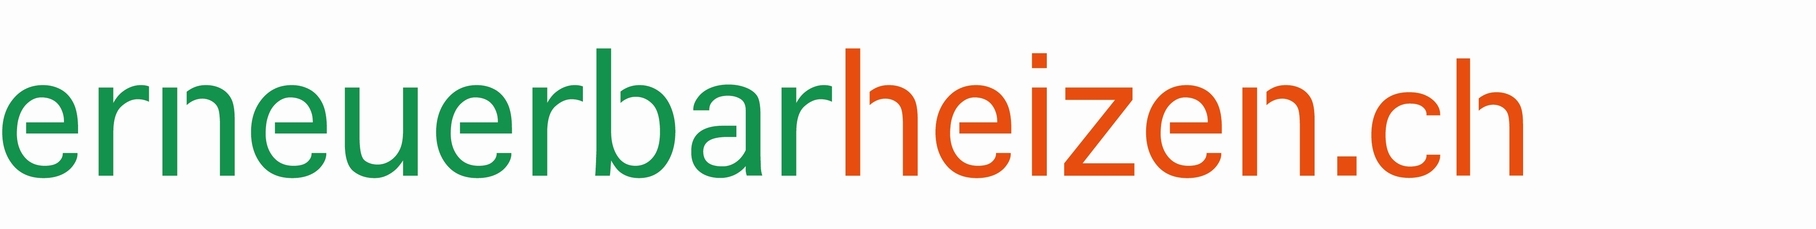 Logo erneuerbar heizen